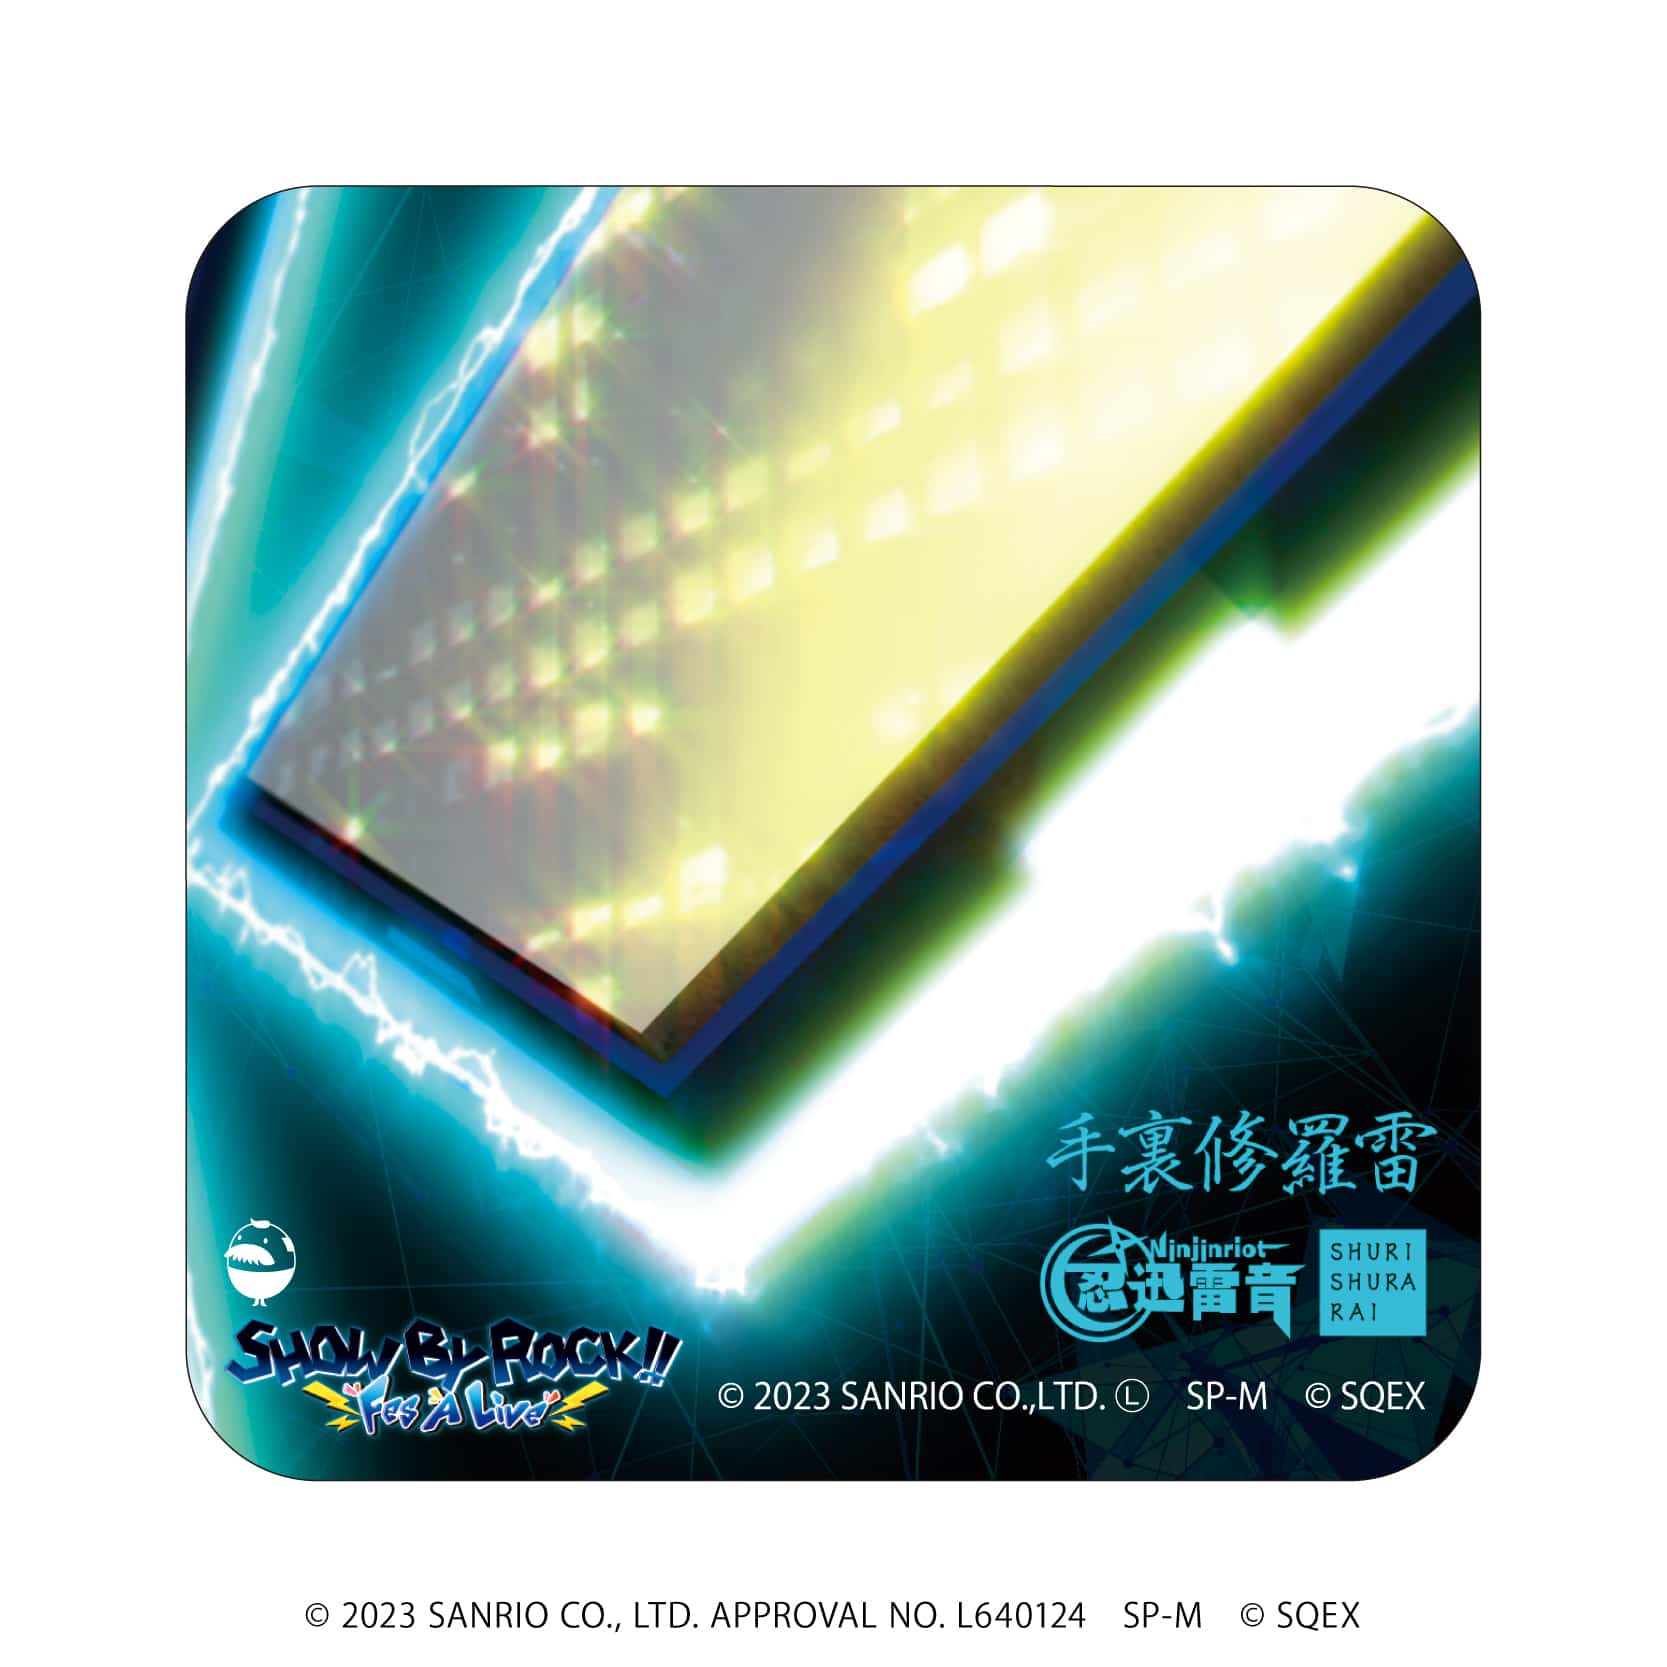 スクエア缶バッジ(正方形)「SHOW BY ROCK!!」01/CDジャケットデザイン コンプリートBOX(全6種)